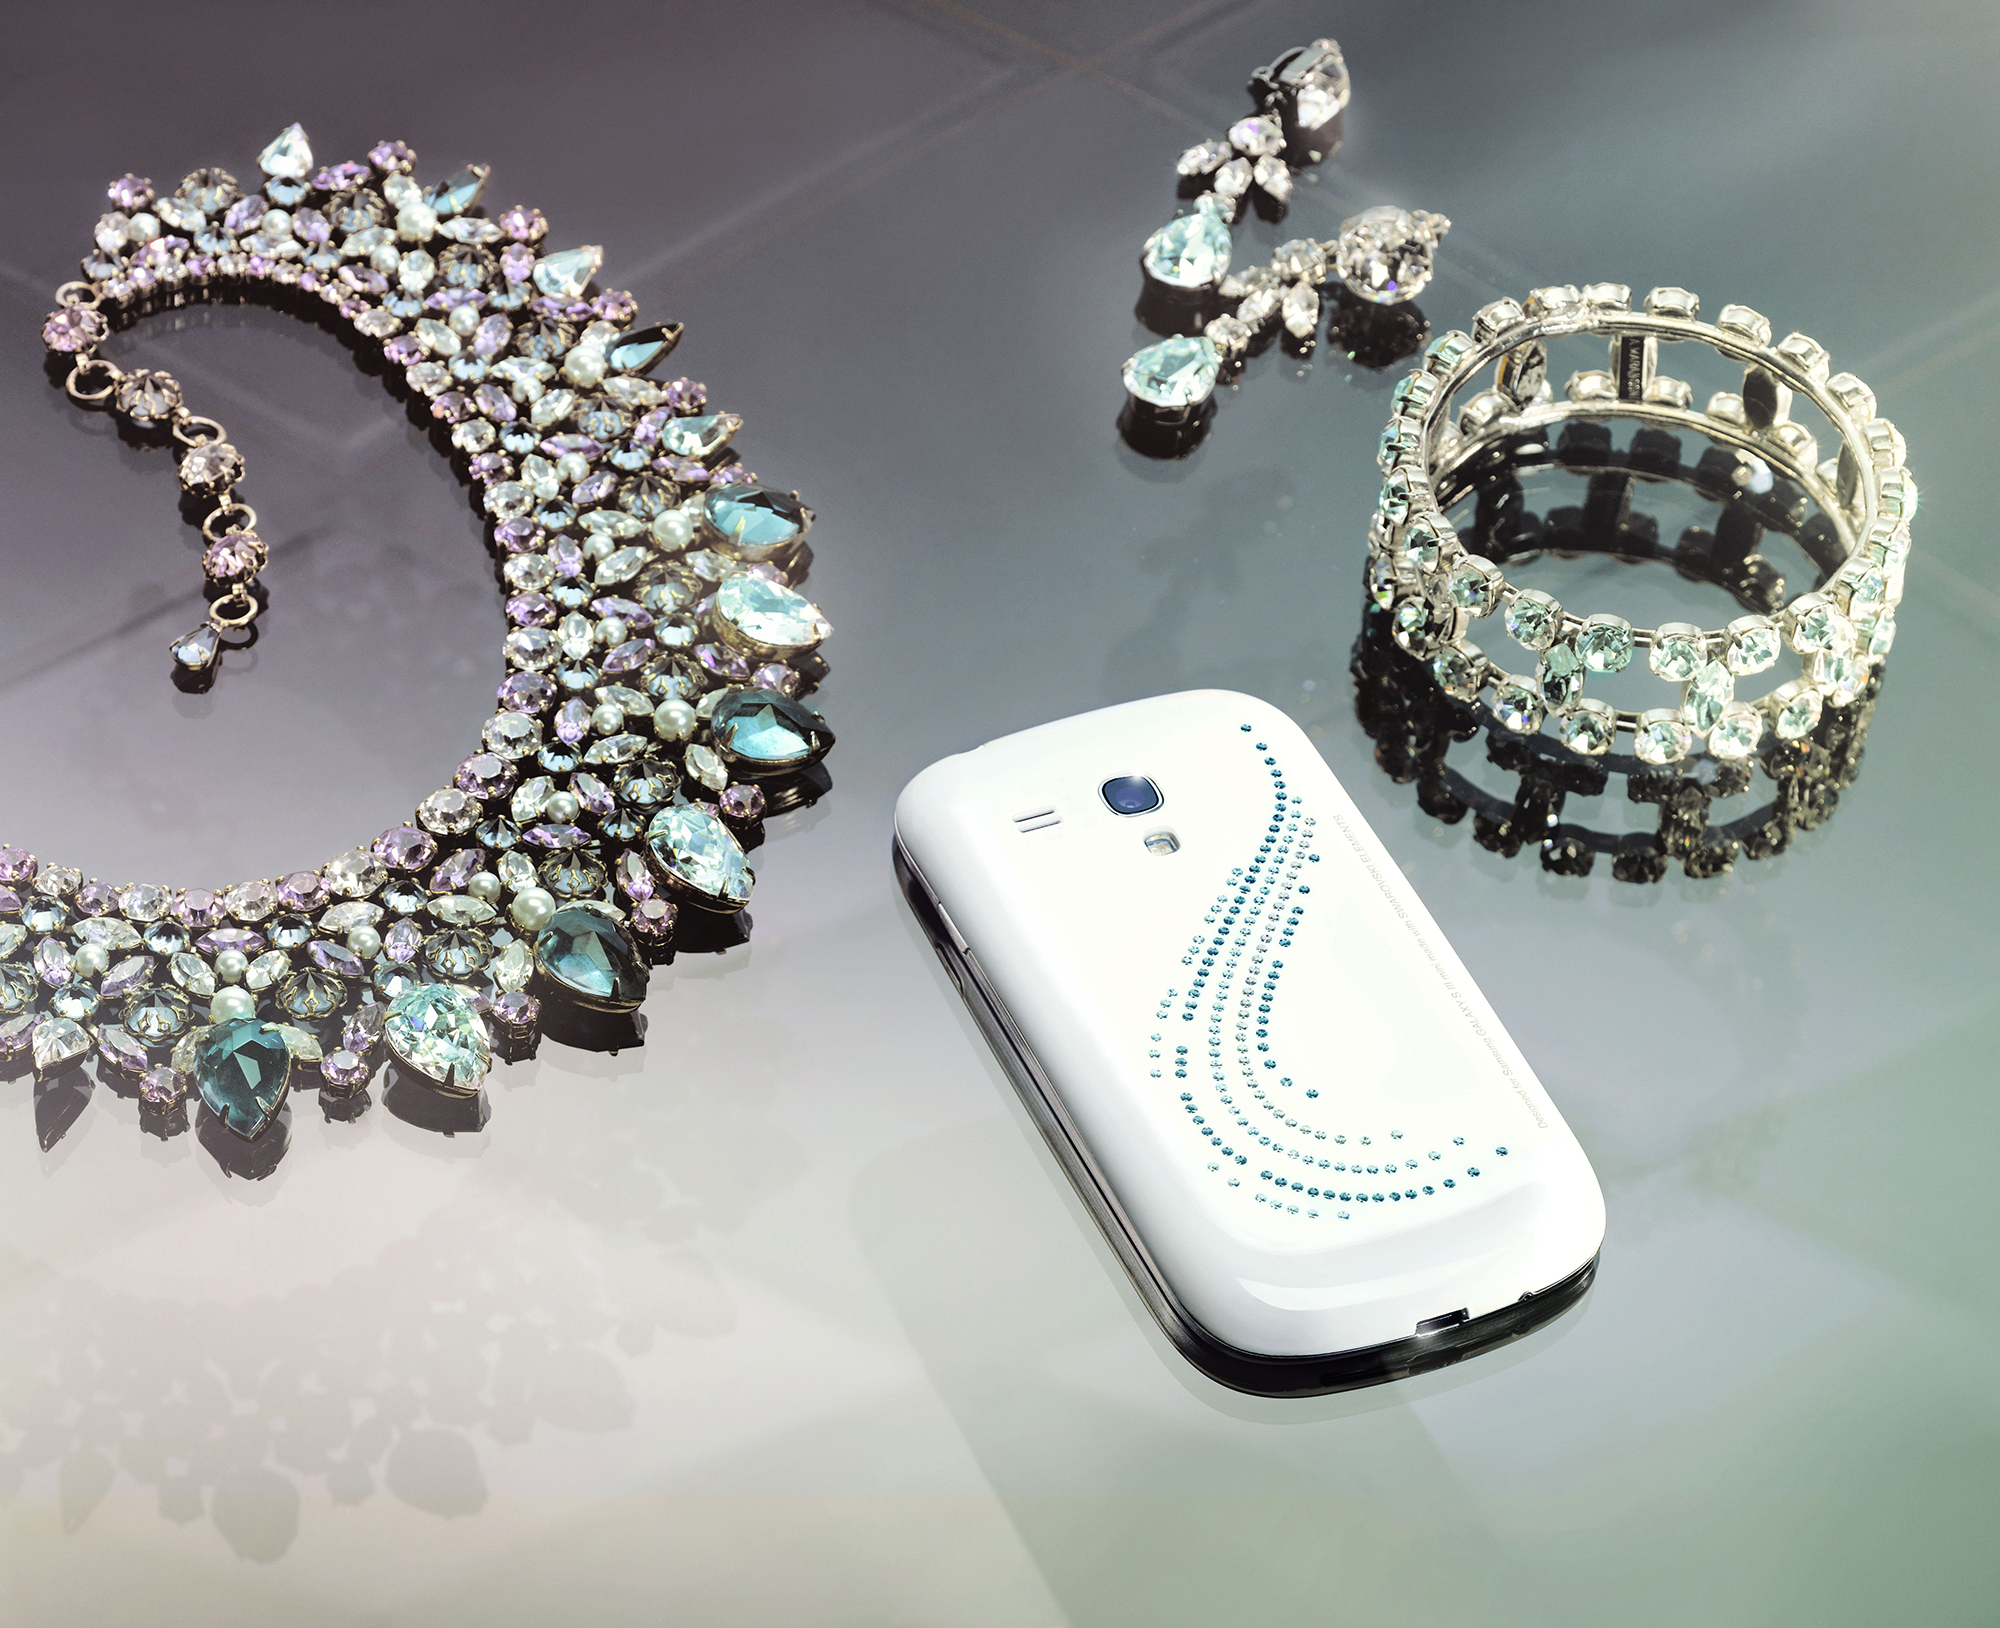 Crystal Galaxy Swarovski. Samsung с кристаллами Сваровски. Кристальные украшения. Самсунг с камнями Сваровски старый. Crystal galaxy